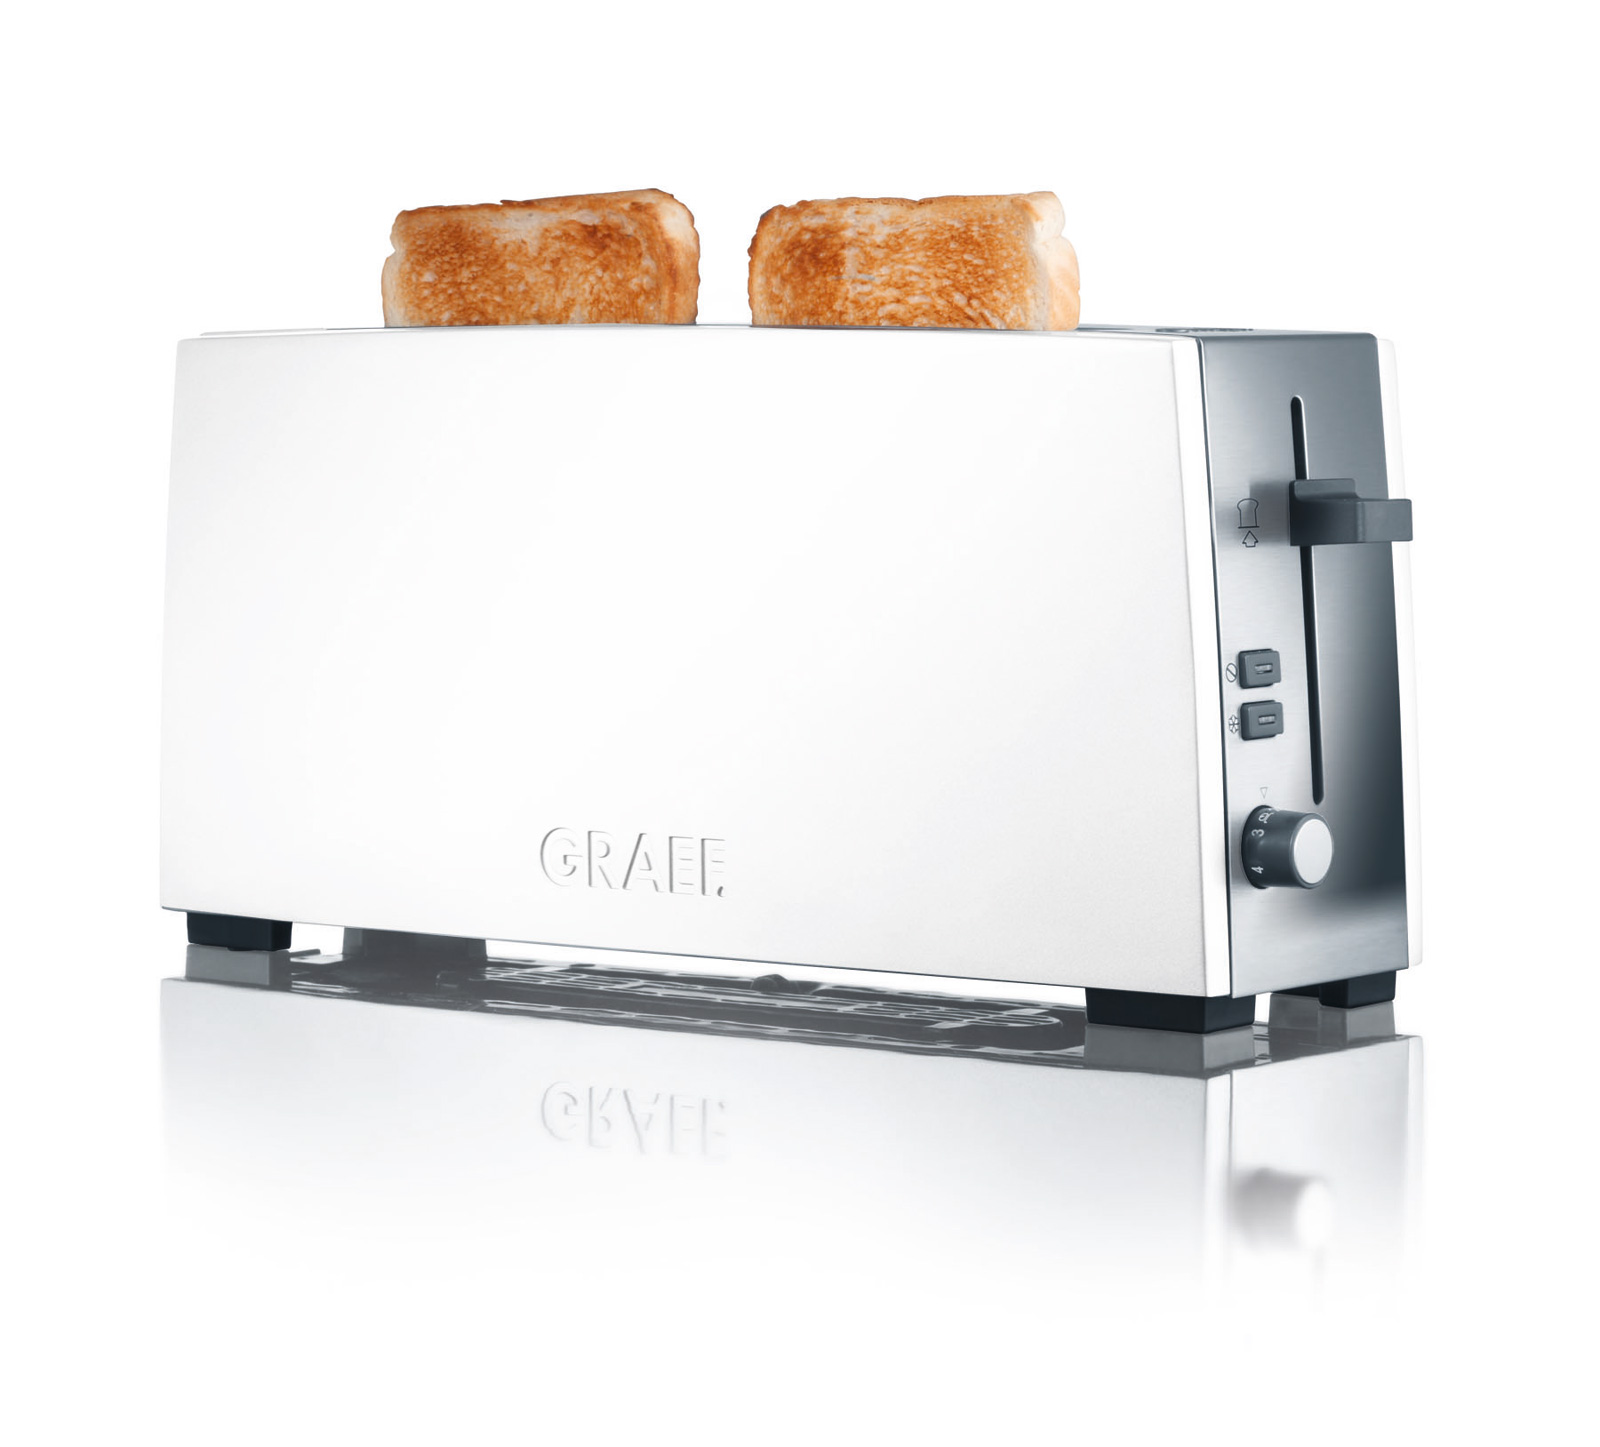 Graef Toaster TO 91 Langschlitz 2 Scheiben weiß